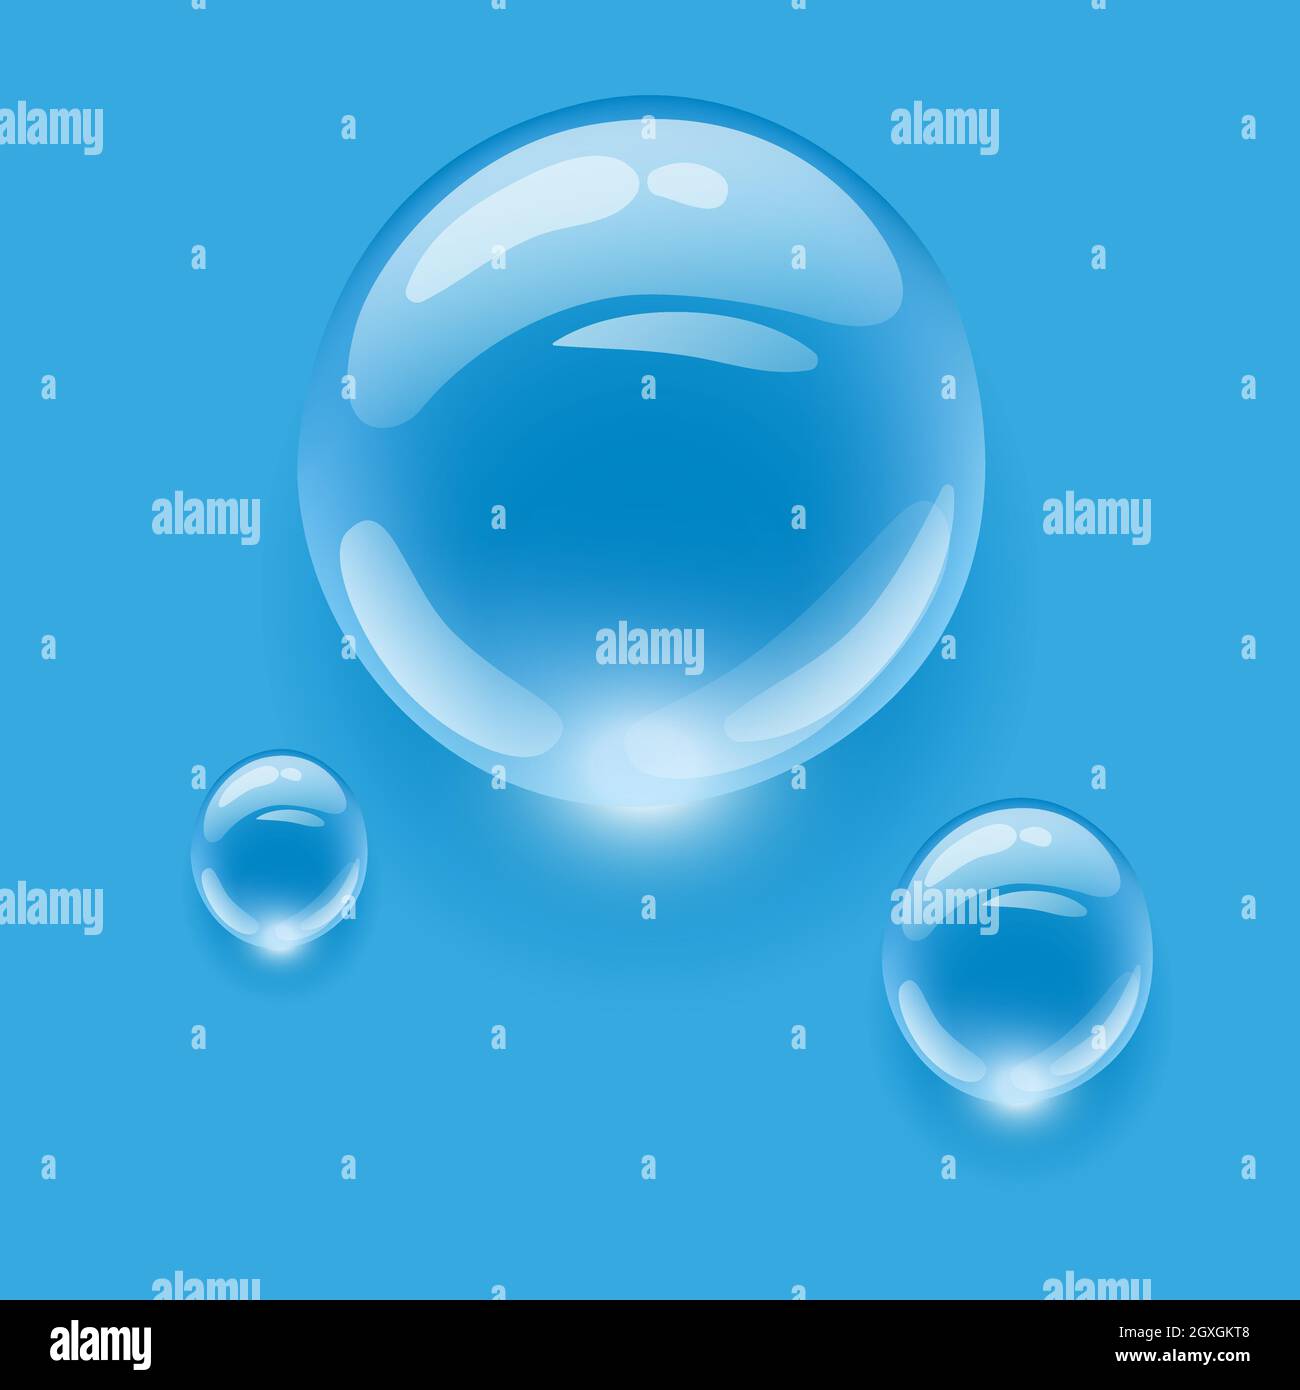 Gouttes d'eau réalistes et transparentes sur fond coloré. Illustration vectorielle. Laisse tomber la pluie d'eau Illustration de Vecteur